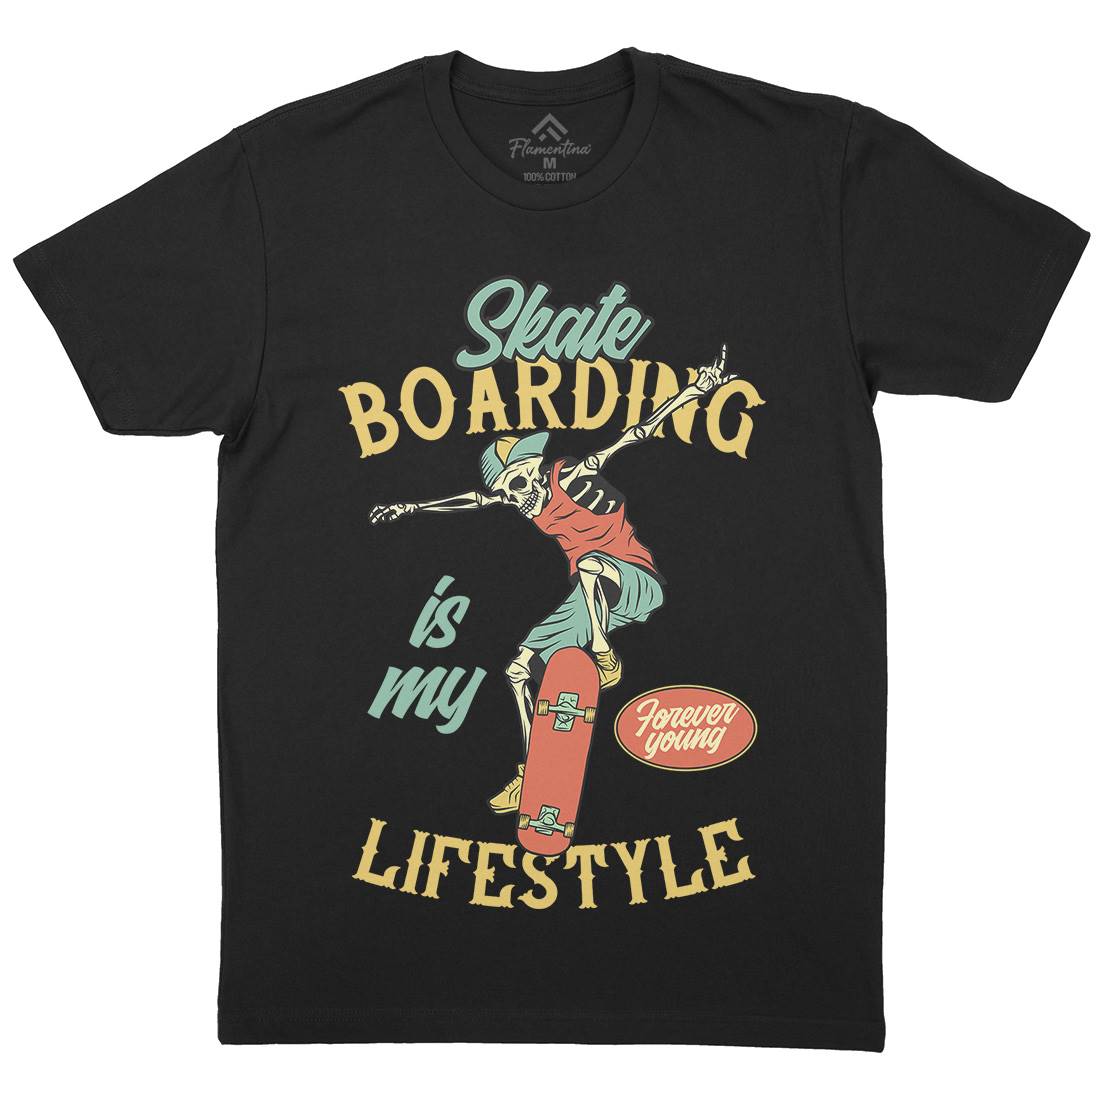 Skateboarding Lifestyle Mens Organic Crew Neck T-Shirt Skate D976